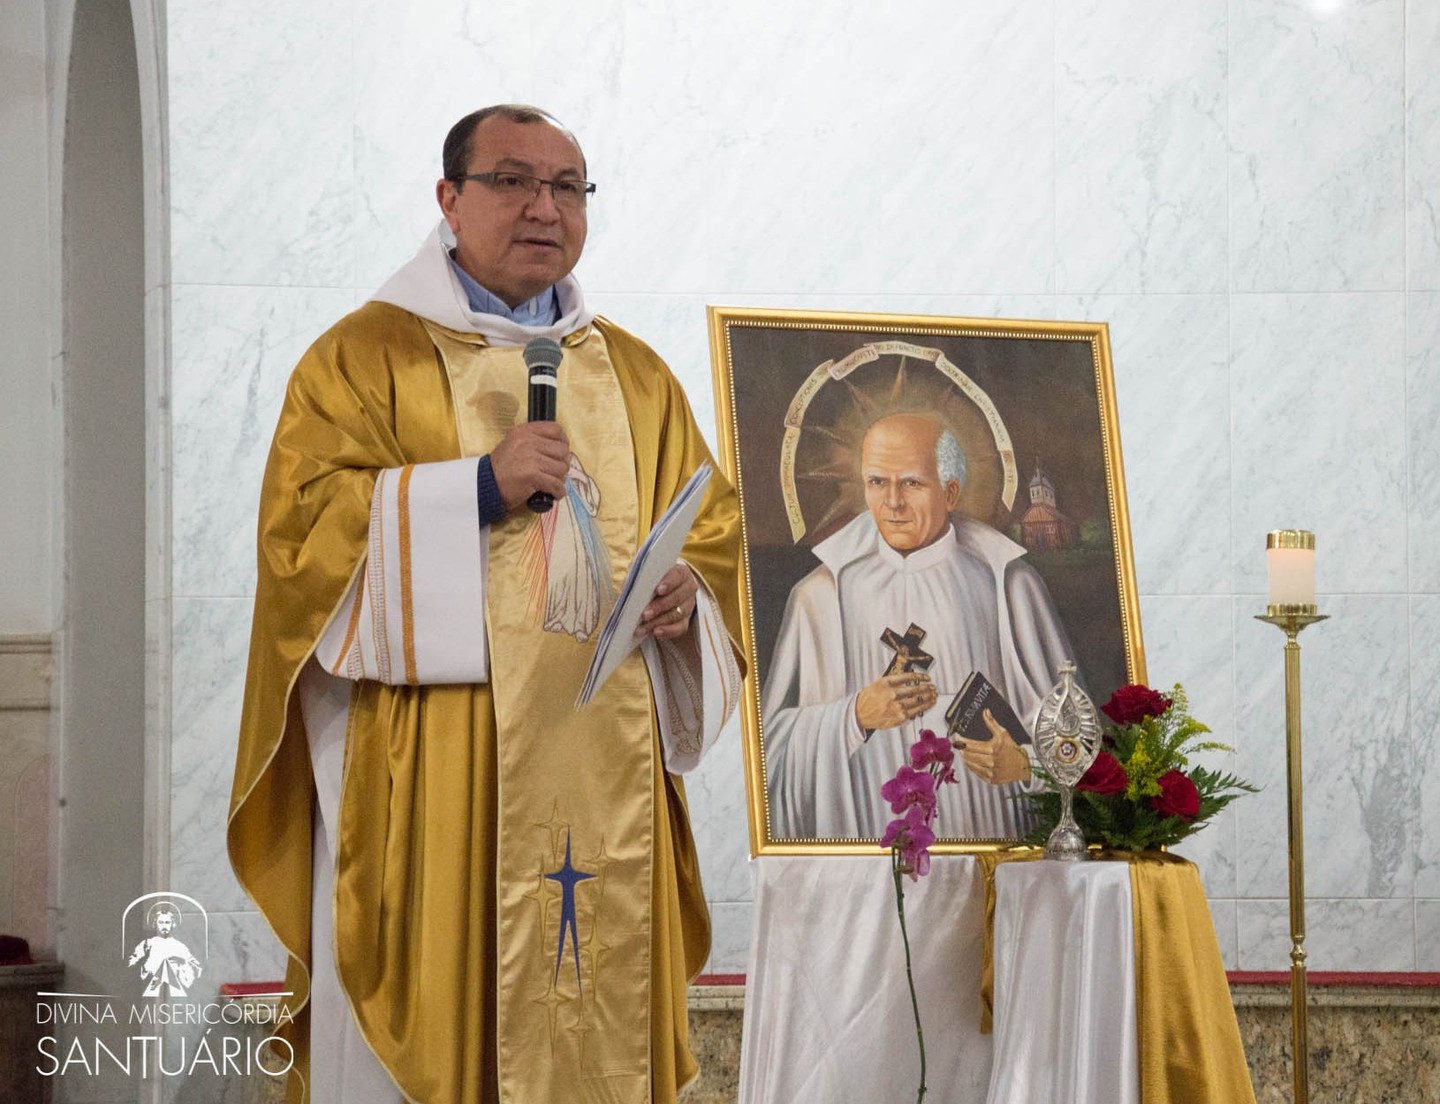 Domingo o Papa canonizará o fundador dos Padres Marianos